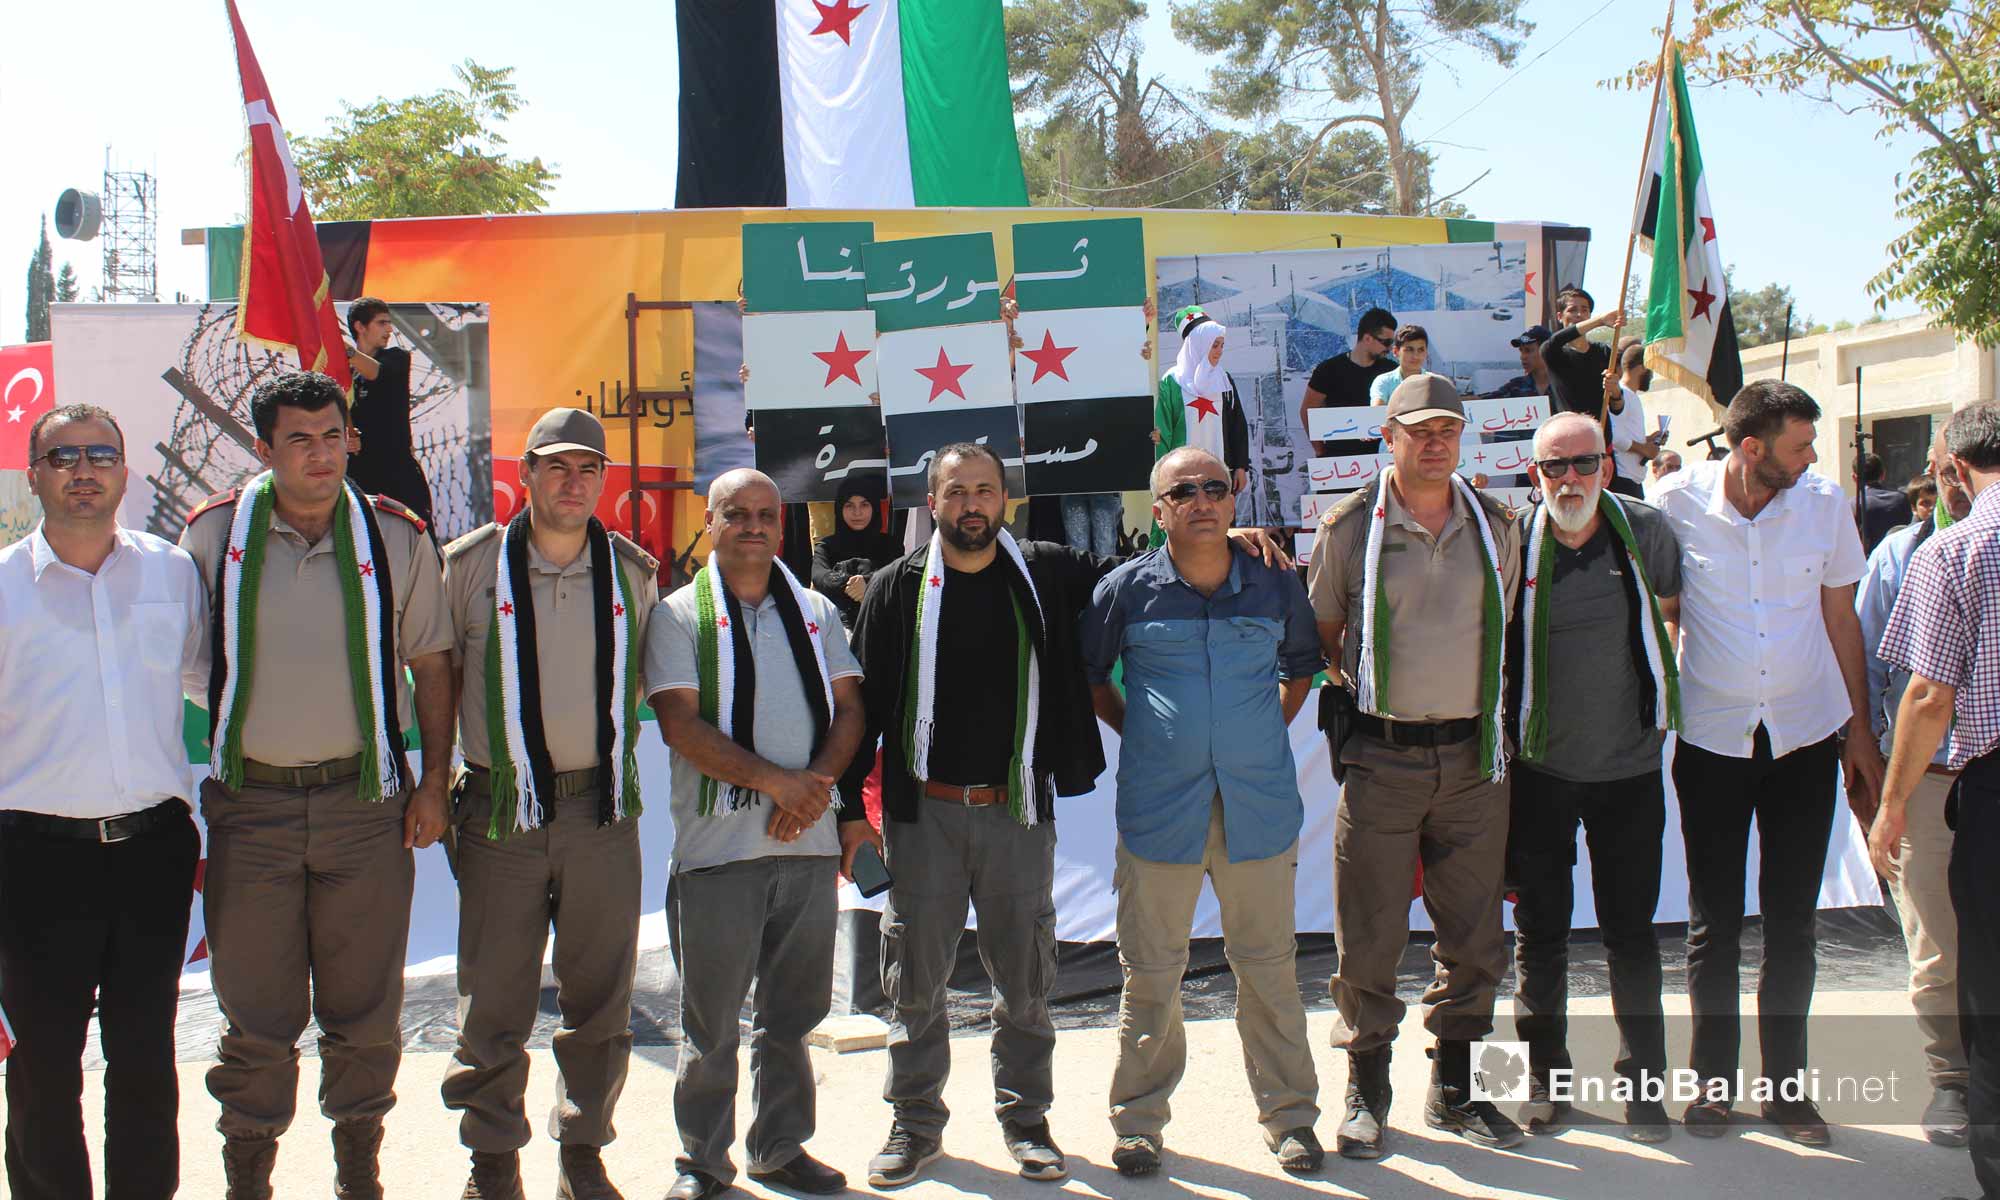 فعاليات في مدينة جرابلس بريف حلب الشمالي احتفالًا بالذكرى الأولى لتحريرها - 24 آب 2017 (عنب بلدي)